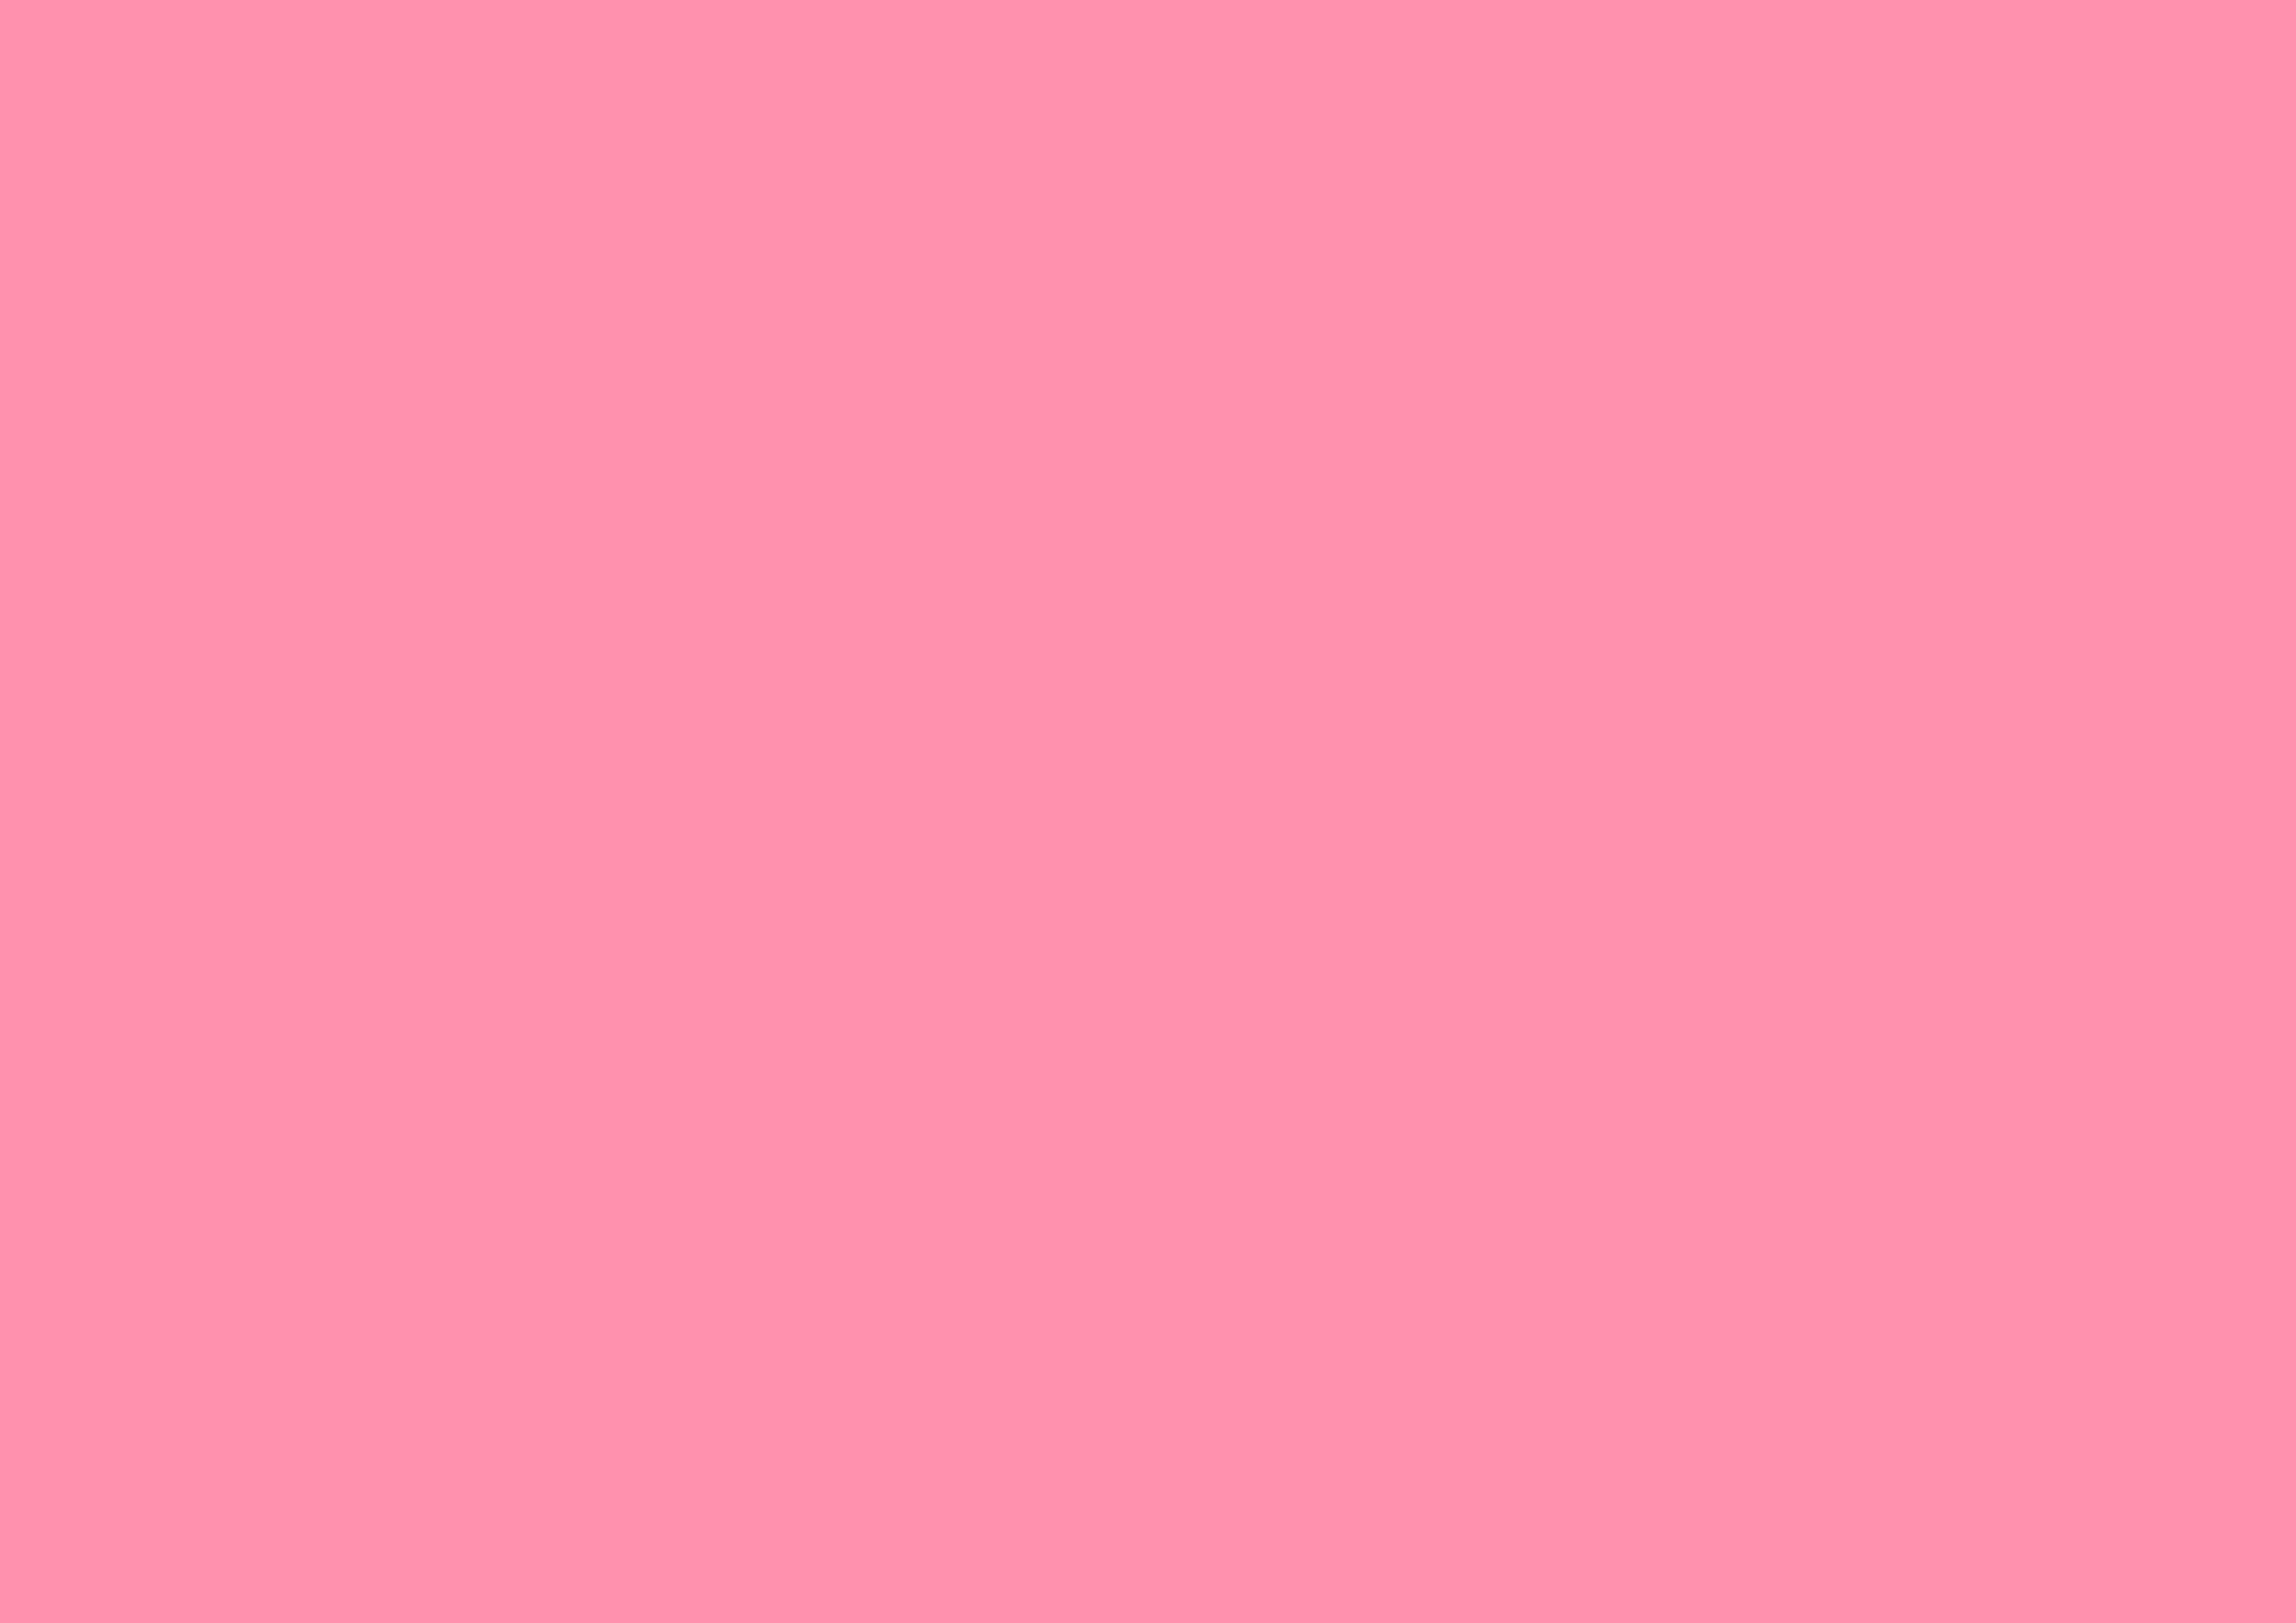 3508x2480 Baker-Miller Pink Solid Color Background